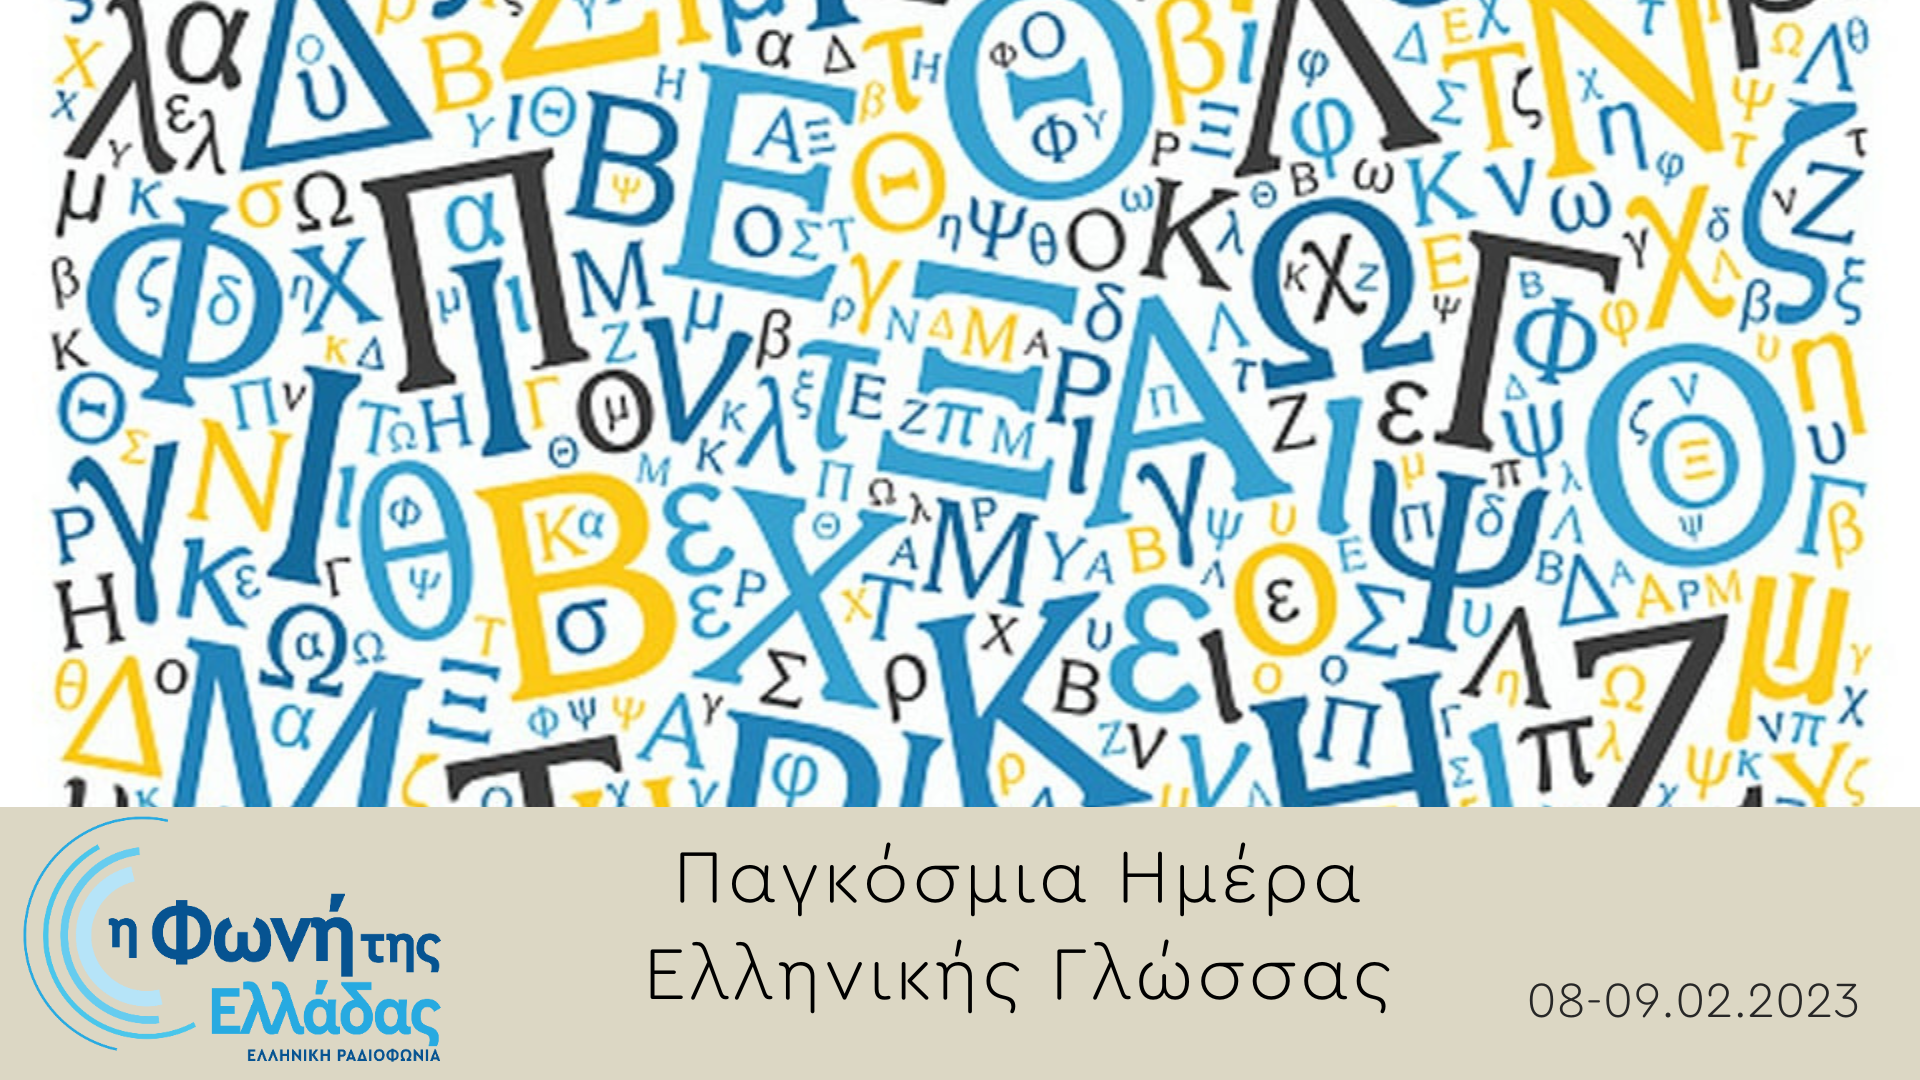 «Η Φωνή της Ελλάδας» γιορτάζει την Παγκόσμια Ημέρα Ελληνικής Γλώσσας | 08-09.02.2023